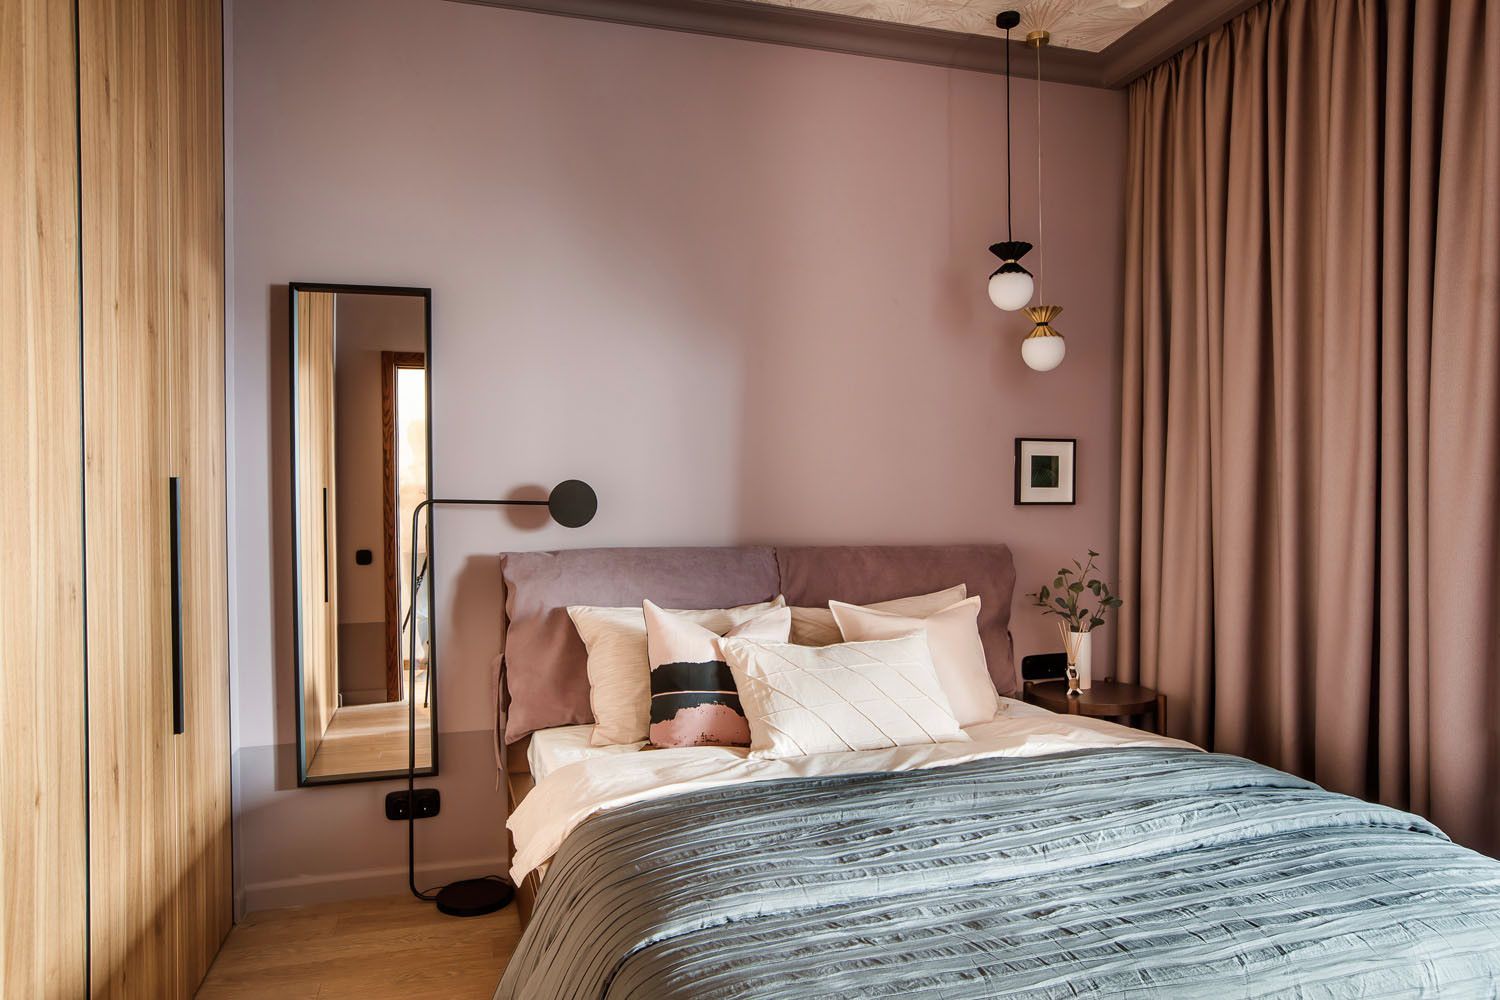 Hình ảnh phòng ngủ phong cách Bắc Âu với tường sơn màu hồng pastel, giường nệm màu trắng, cạnh đó là tủ gỗ lớn